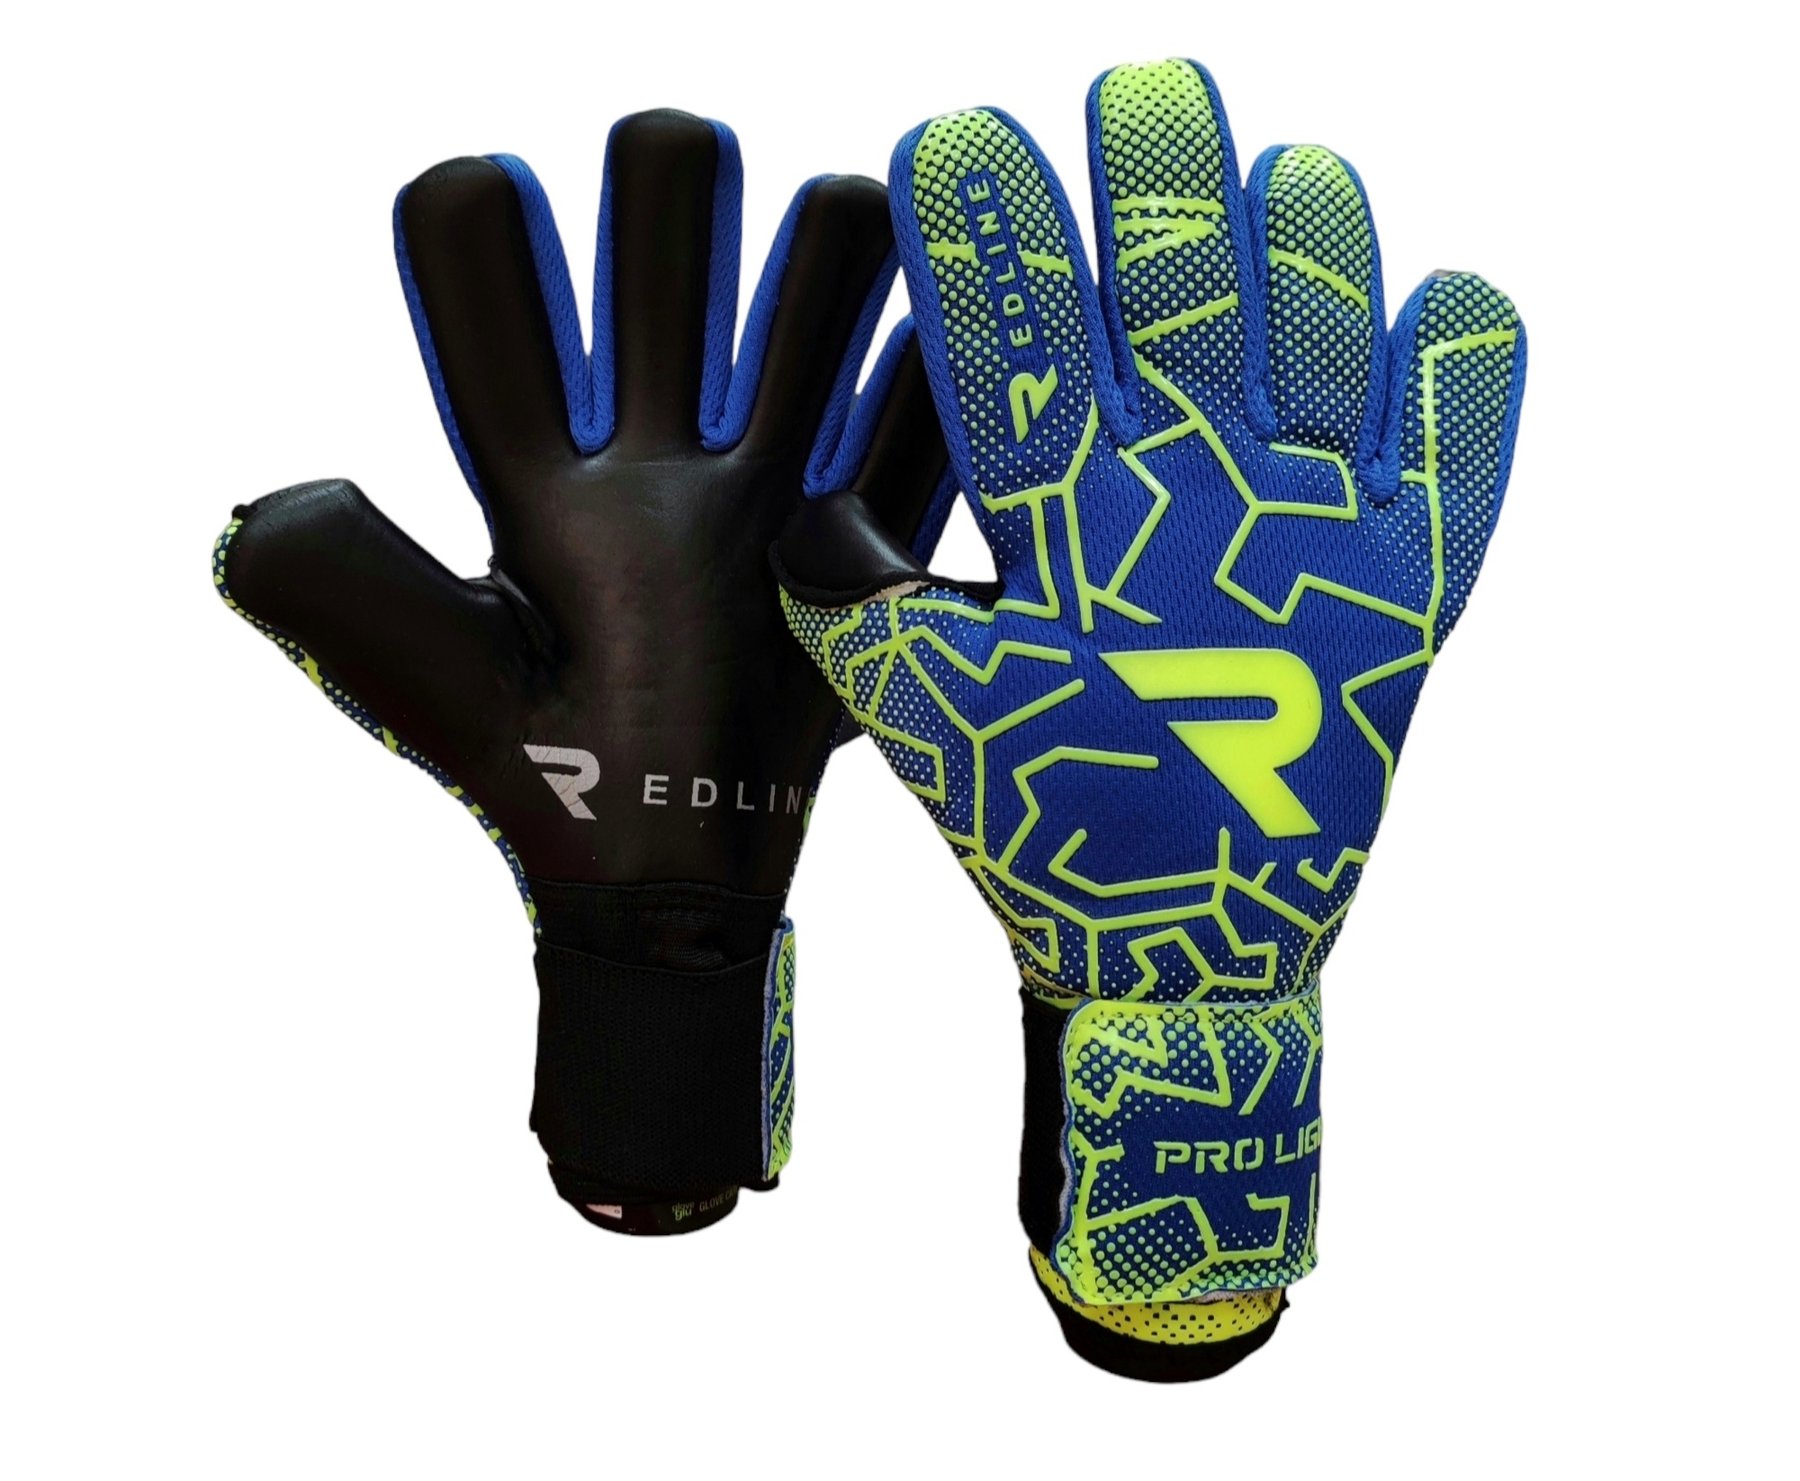 Вратарские перчатки Redline Pro Light Green Blue купить